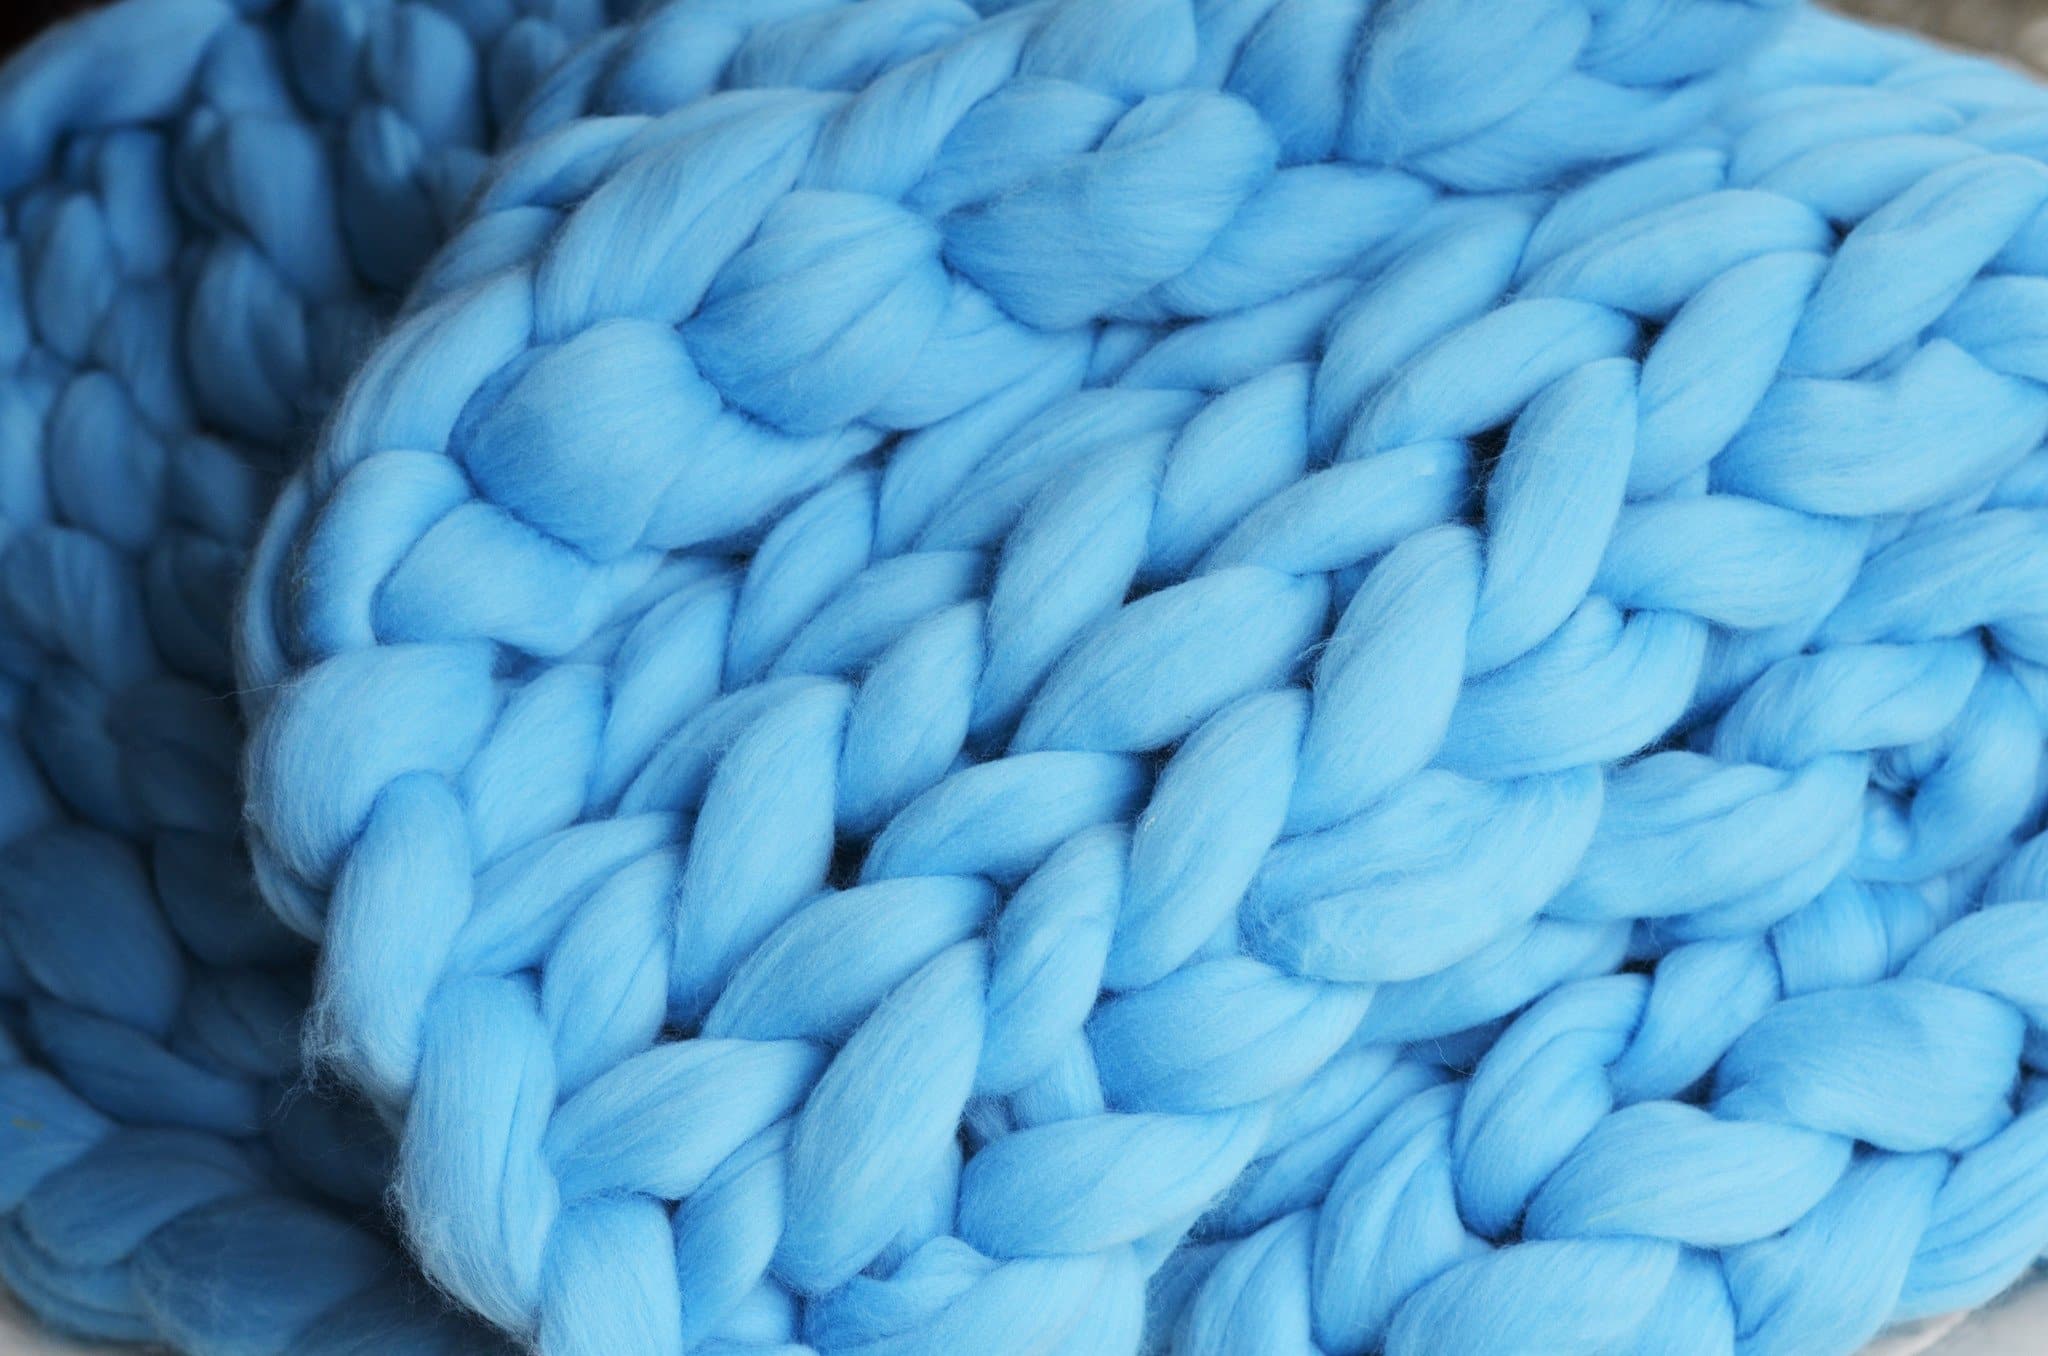 DIY Arm Knitting Kit for a blanket 35x50 – BeCozi